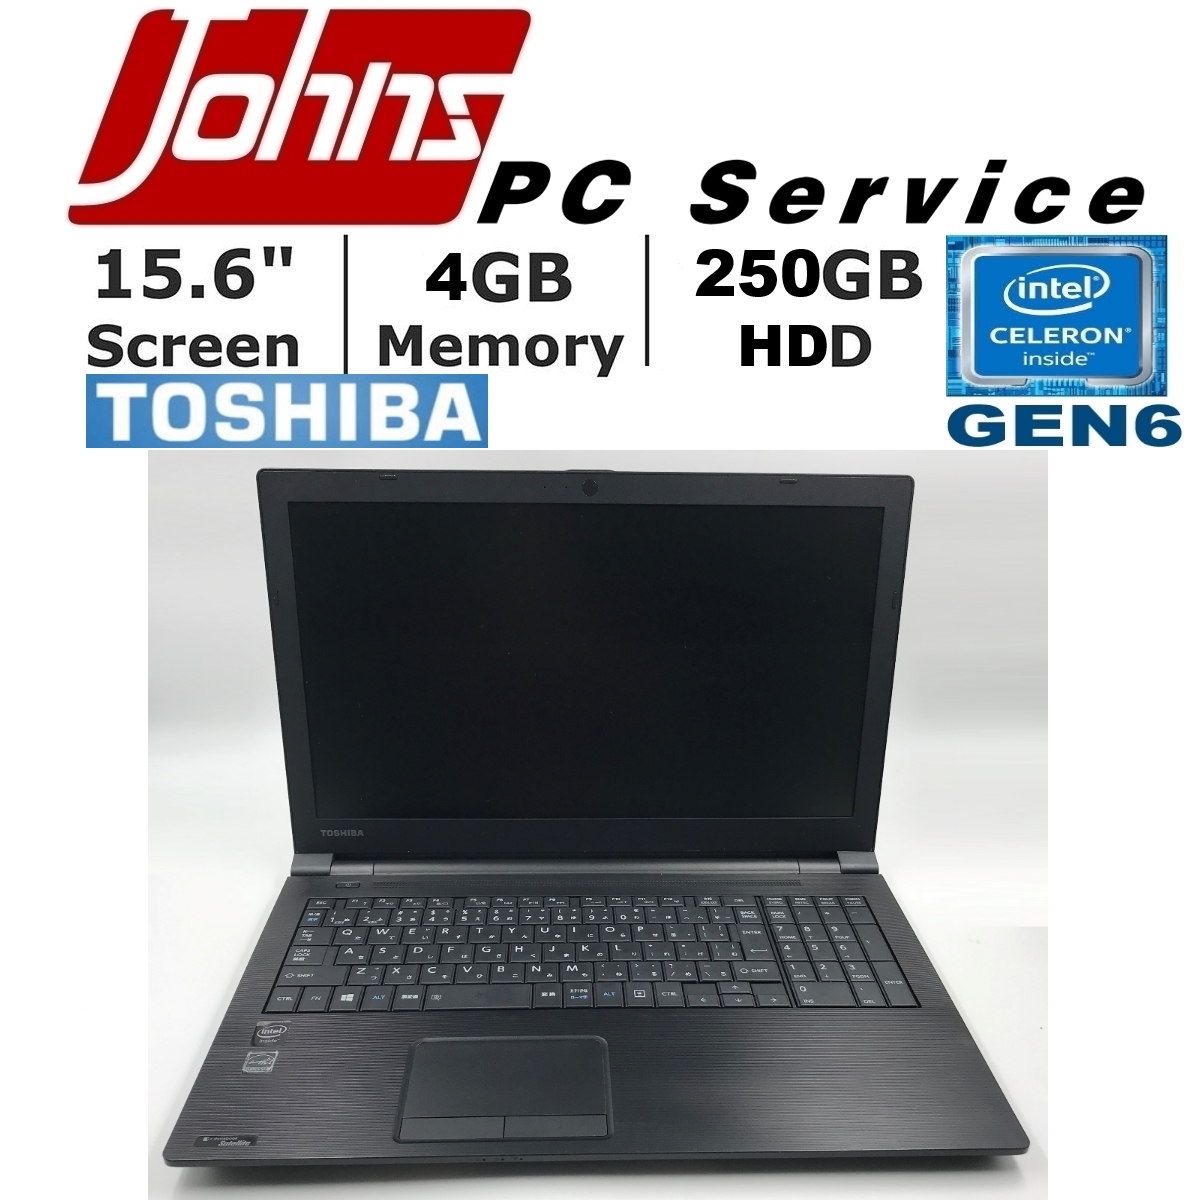 โน๊ตบุ๊คมือสอง Toshiba R35 Celeron gen6 15.6นิ้ว Notebook ราคาถูกๆ โน๊ตบุ๊ค laptop มือสอง โน็ตบุ๊คมือ2 โน้ตบุ๊คถูกๆ โน๊ตบุ๊คมือสอง2 โน๊ตบุ๊คมือสอง i3/i5/i7